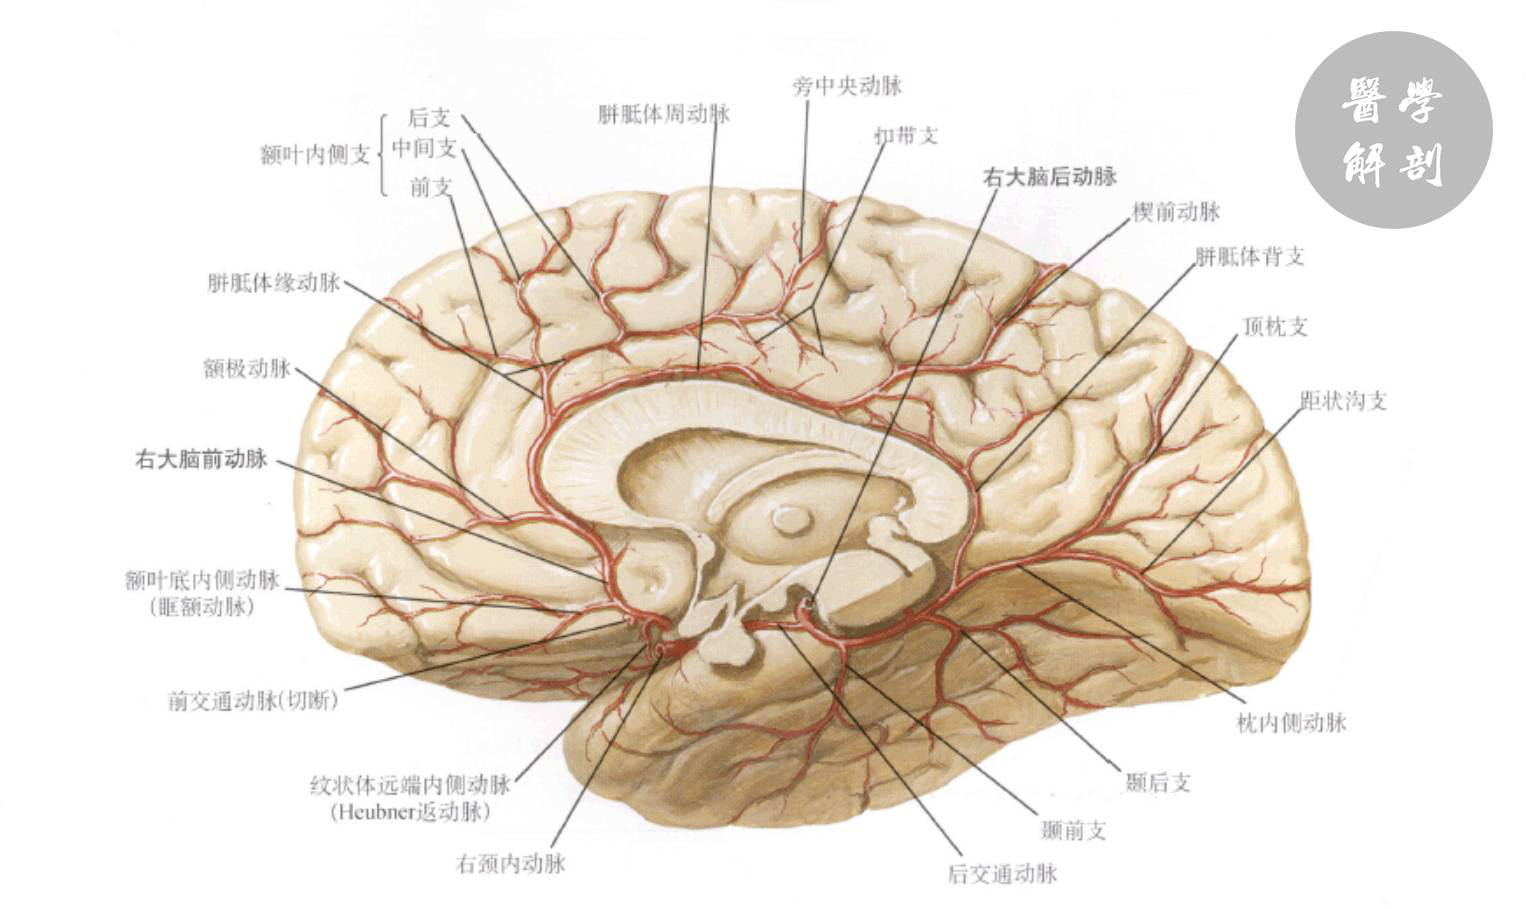 大脑前动脉的临床解剖及应用? 